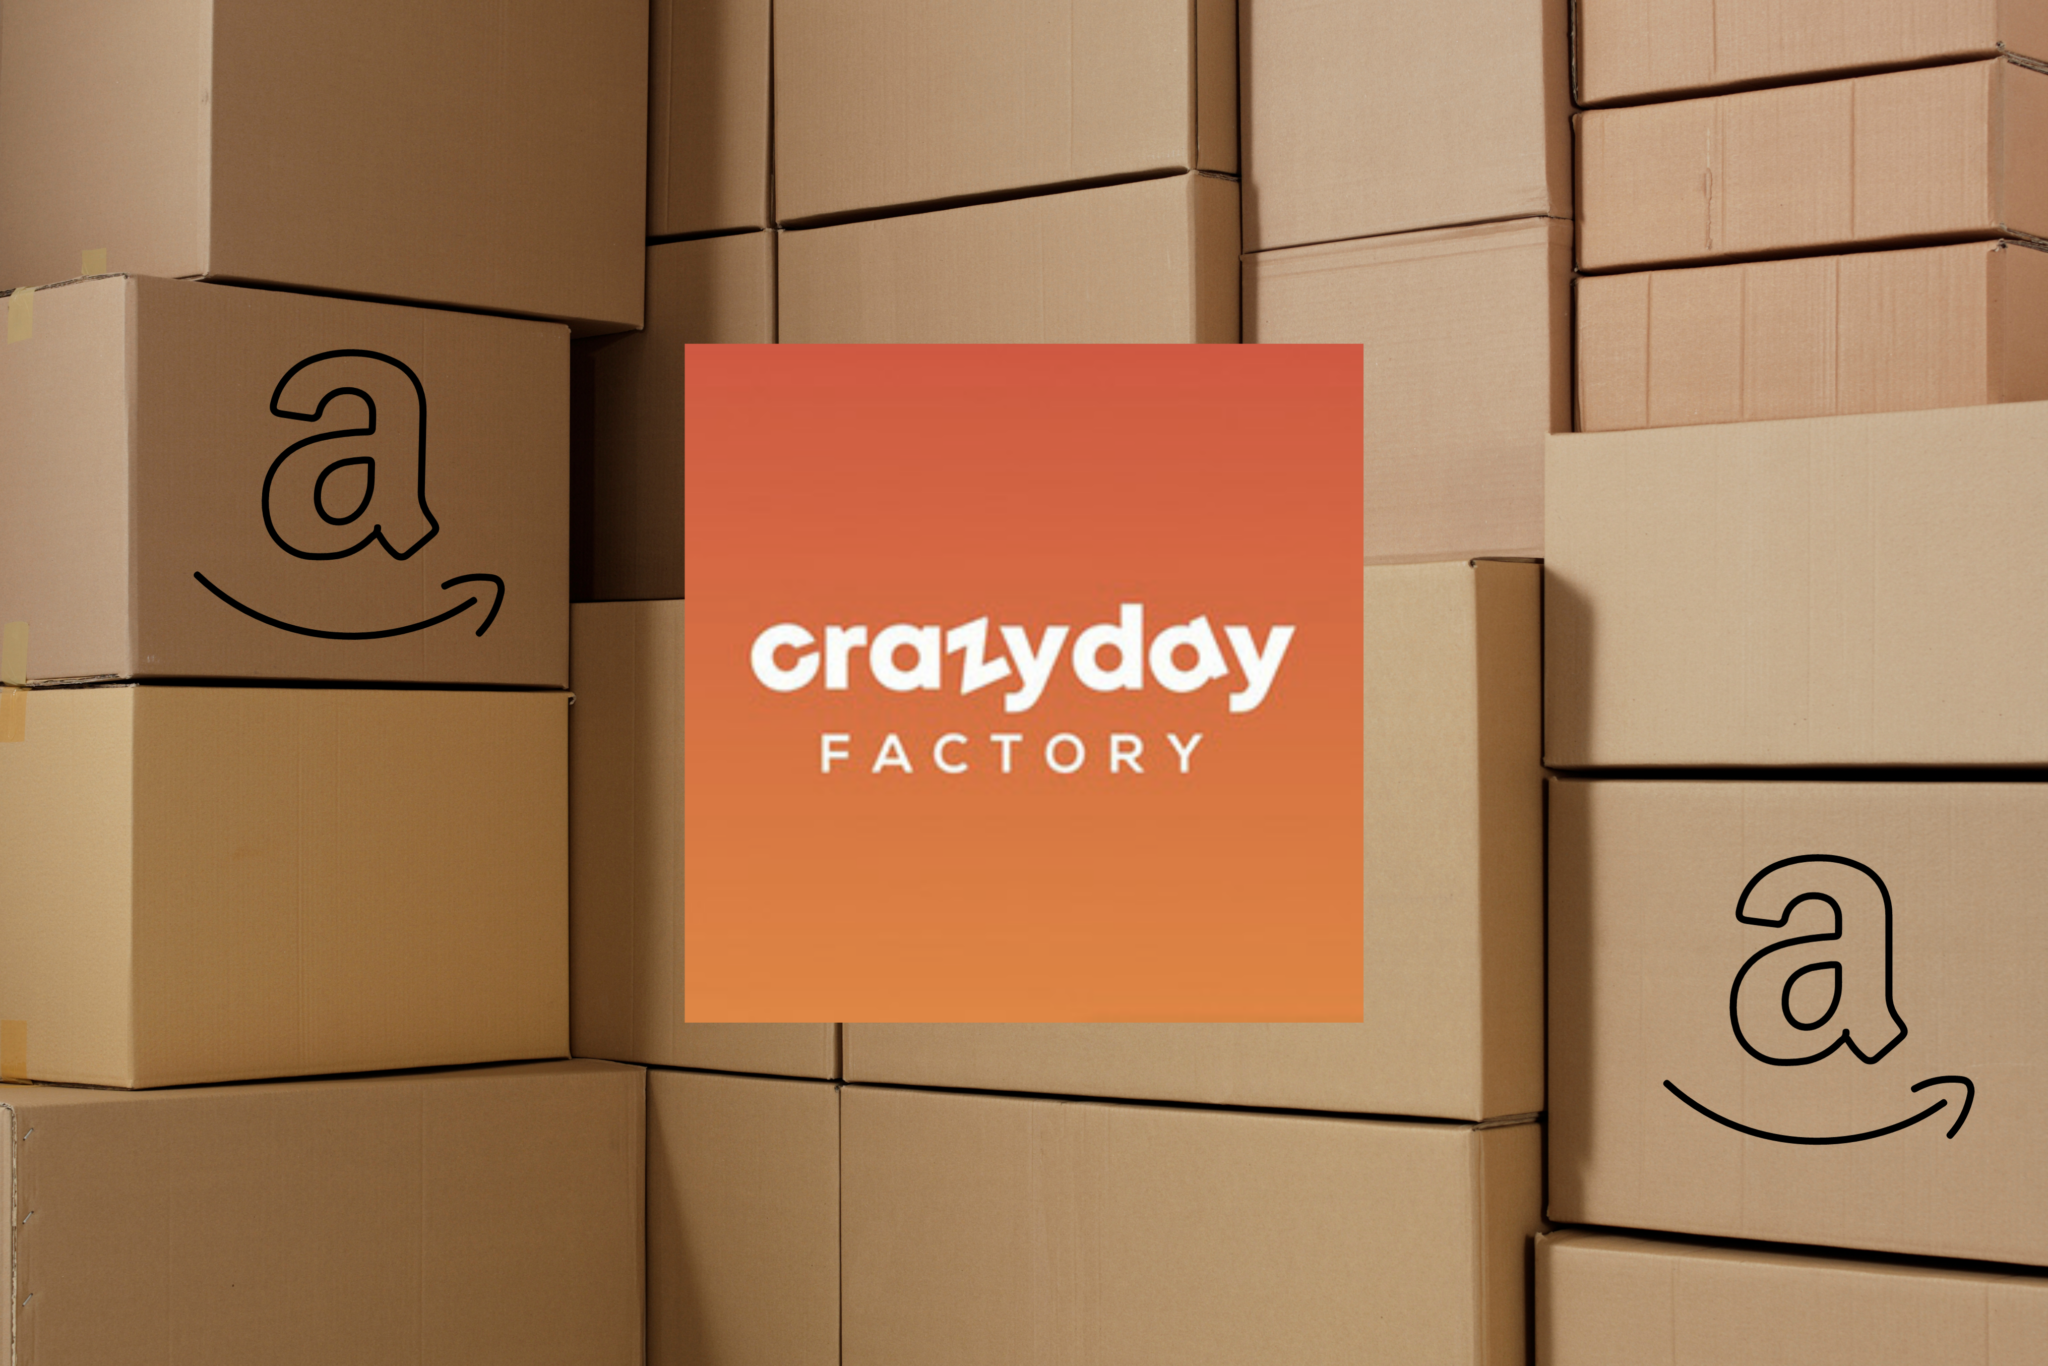 Dónde está Crazy Day Factory: las tiendas para comprar devoluciones de